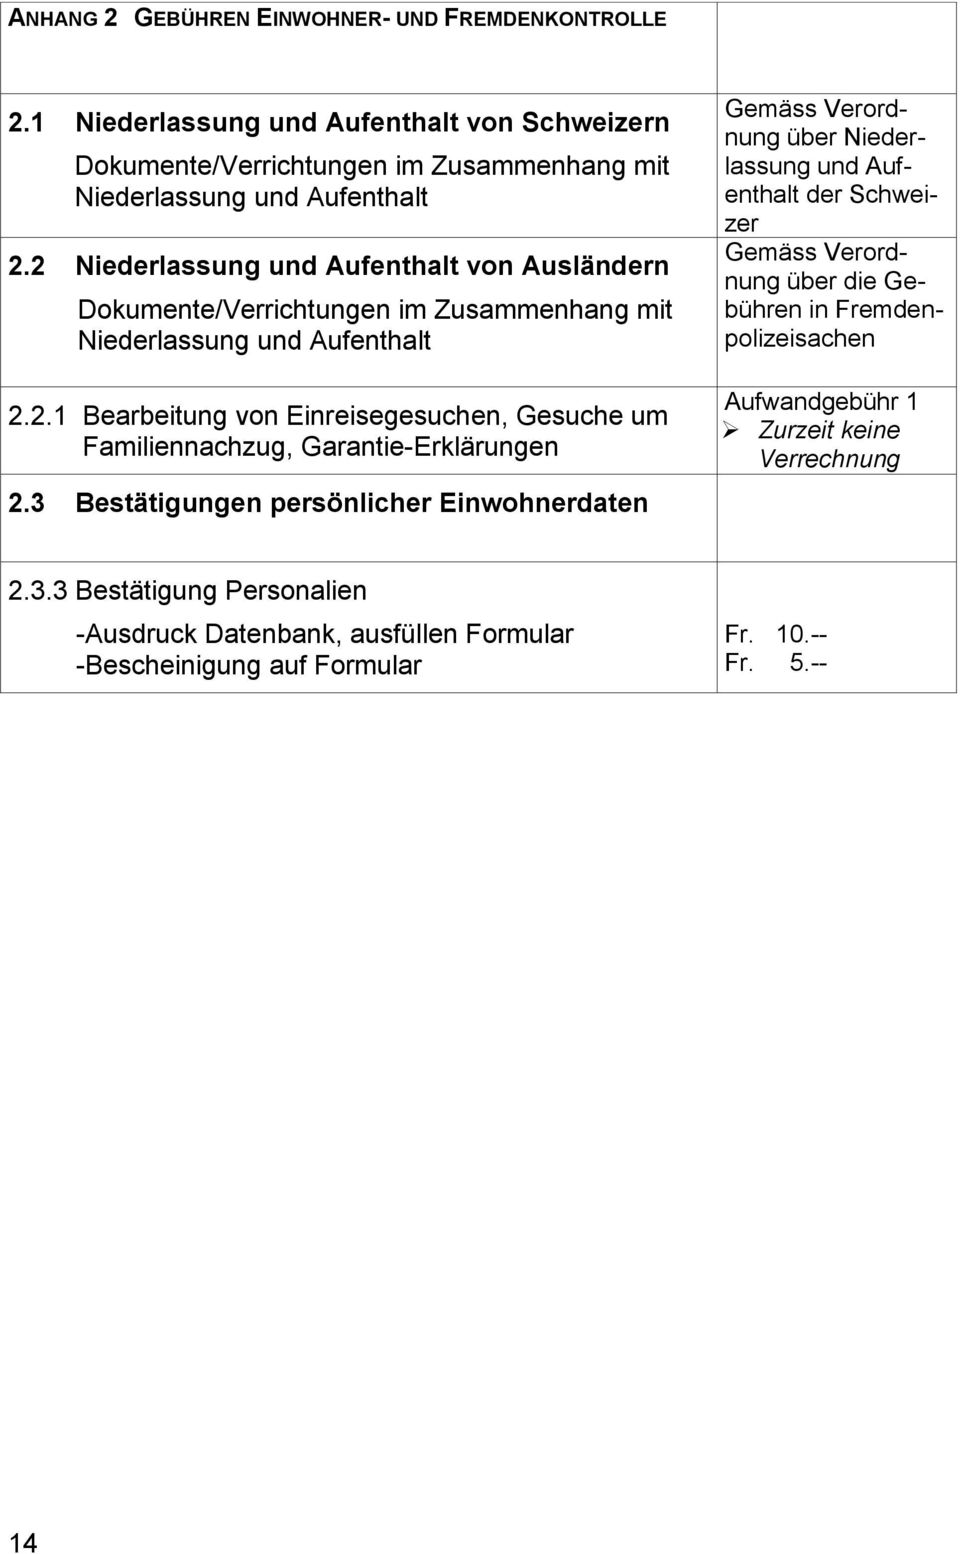 3 Bestätigungen persönlicher Einwohnerdaten Gemäss Verordnung über Niederlassung und Aufenthalt der Schweizer Gemäss Verordnung über die Gebühren in Fremdenpolizeisachen